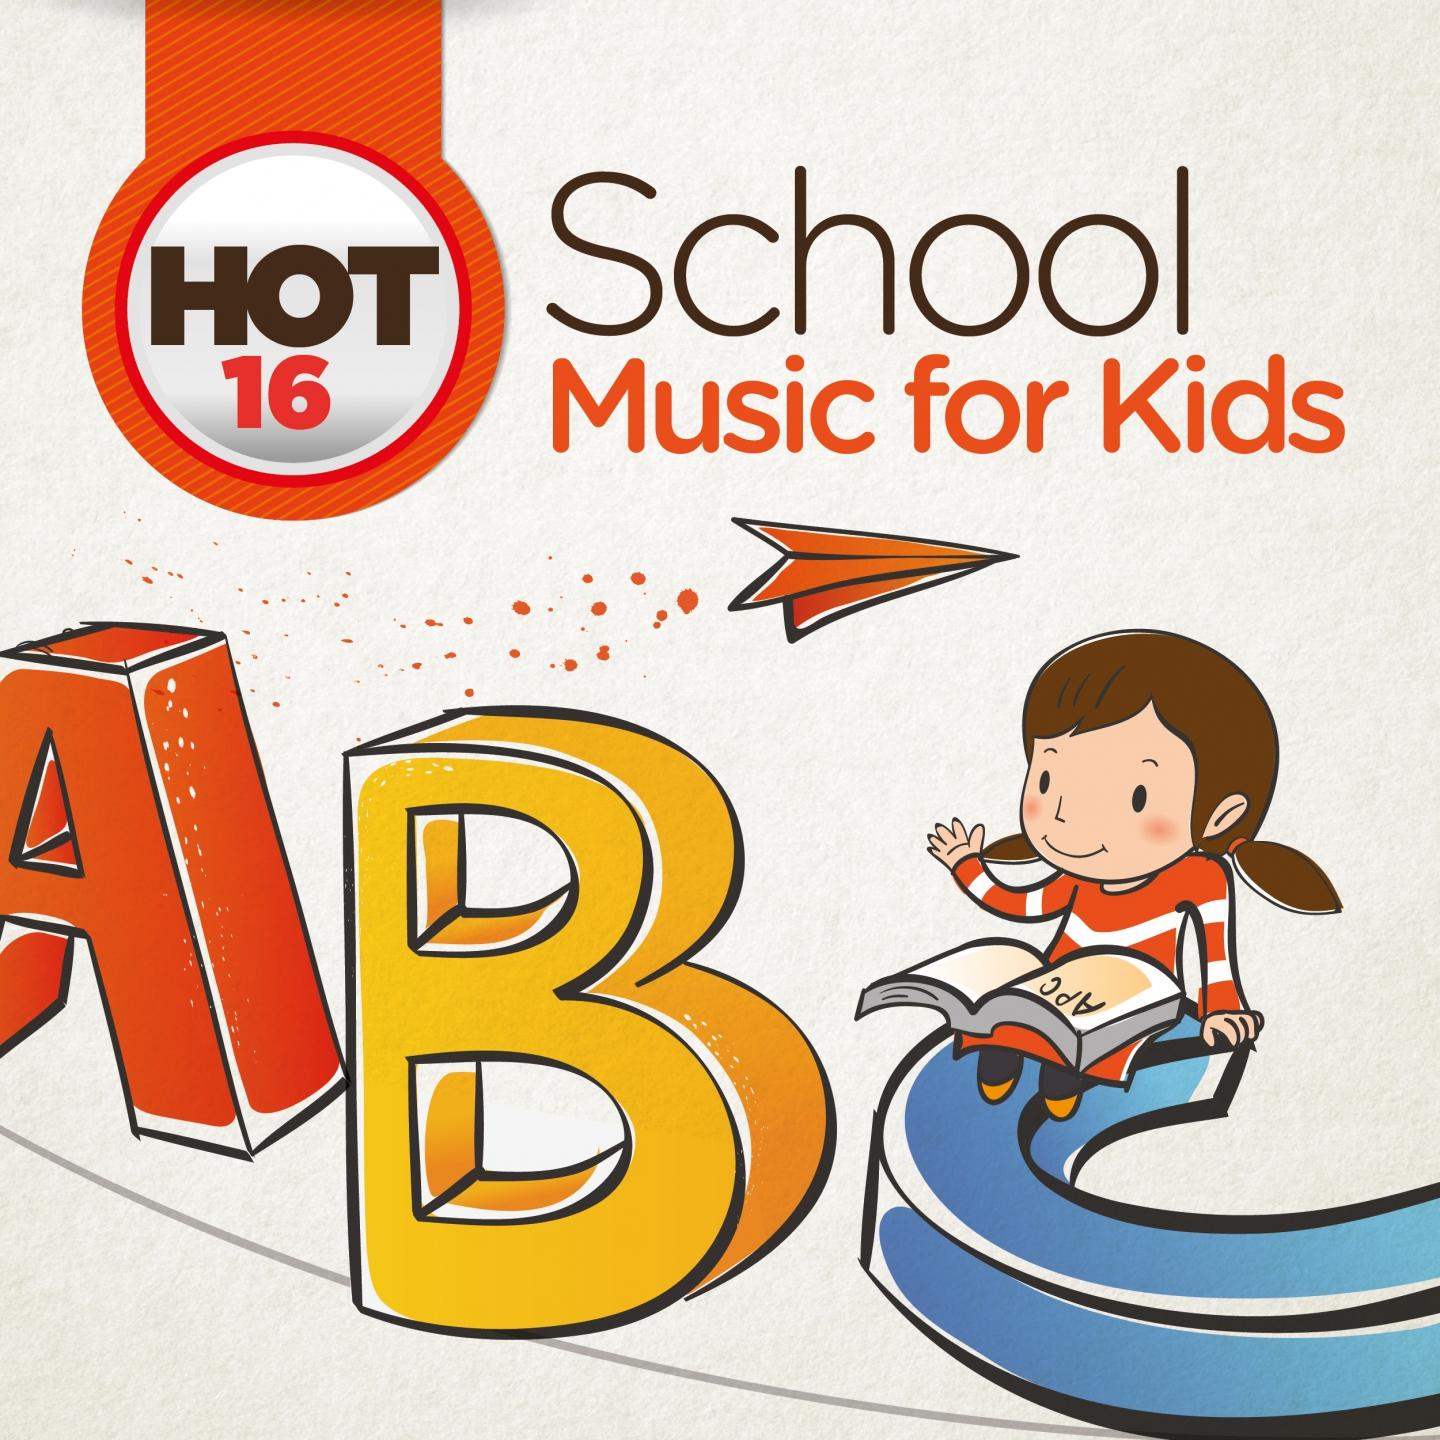 Hot 16: School Music for Kids